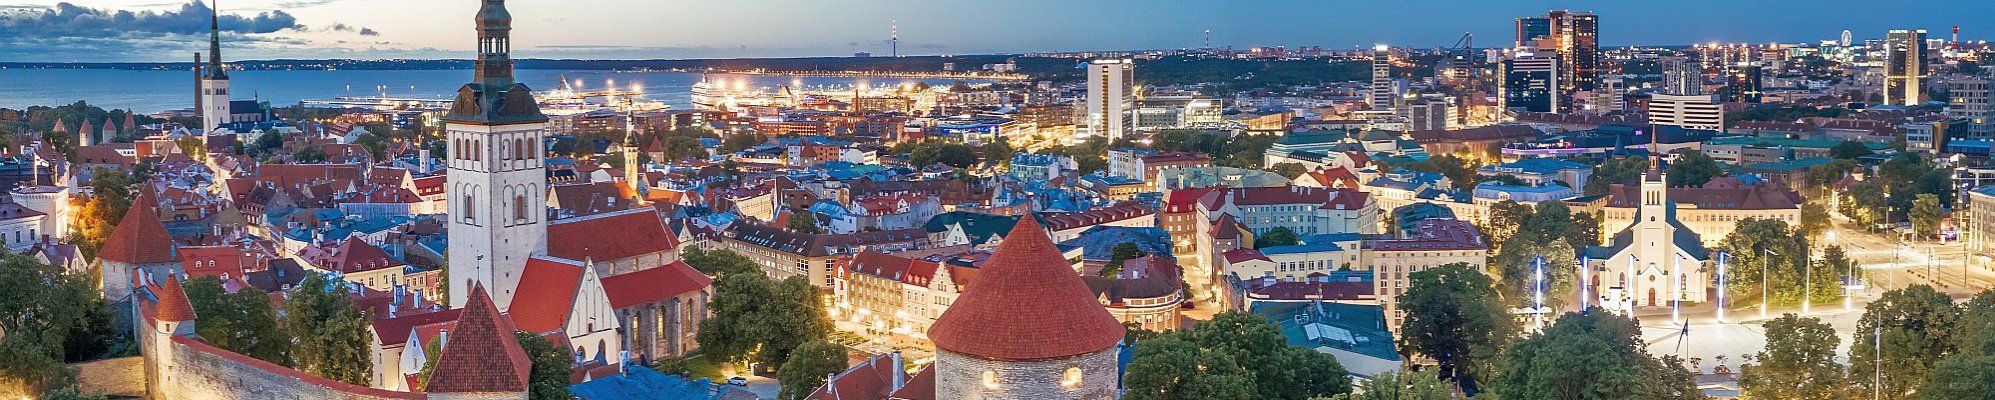 Tallinn - Altstadt